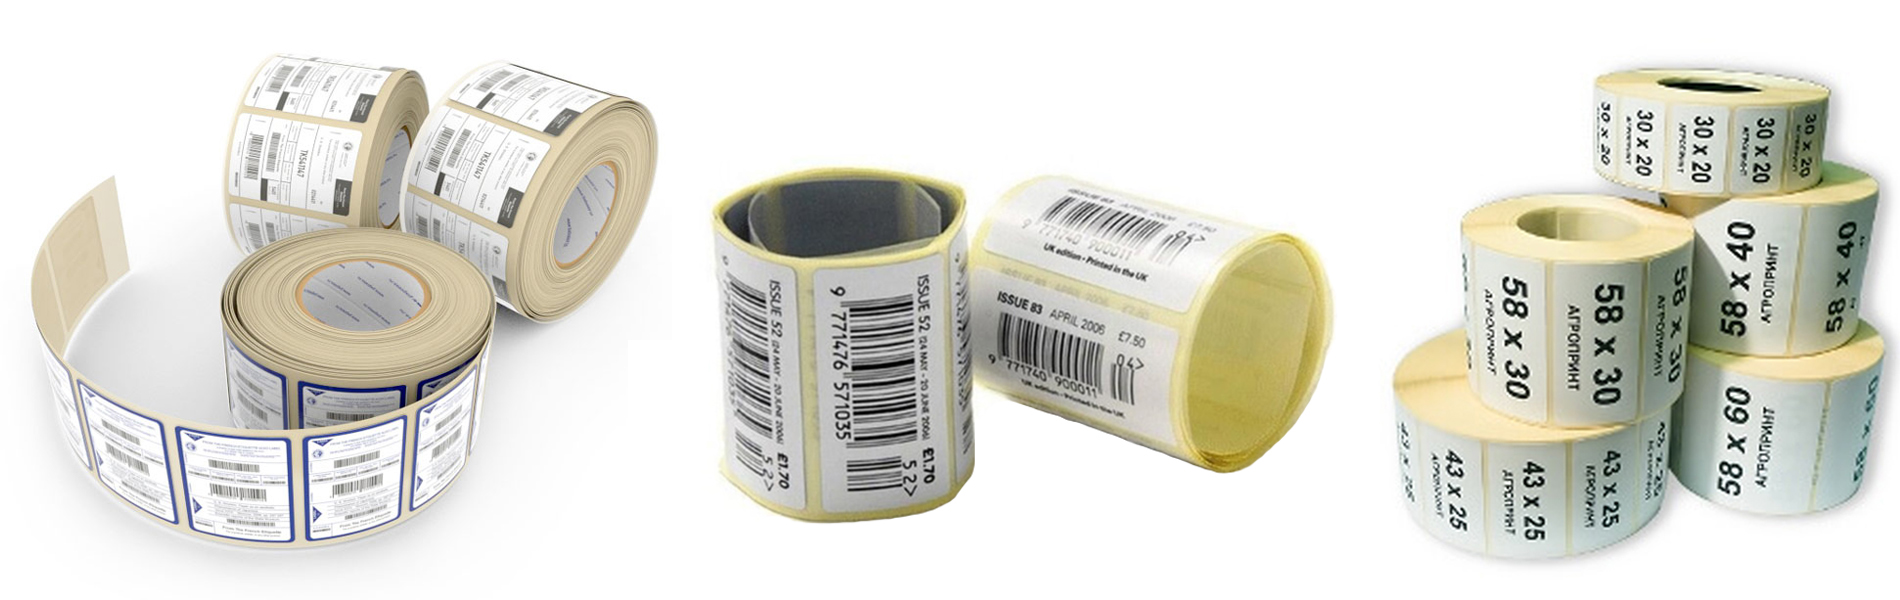 П6ечать этикеток (стикеров) для товаров | Etichete.eu